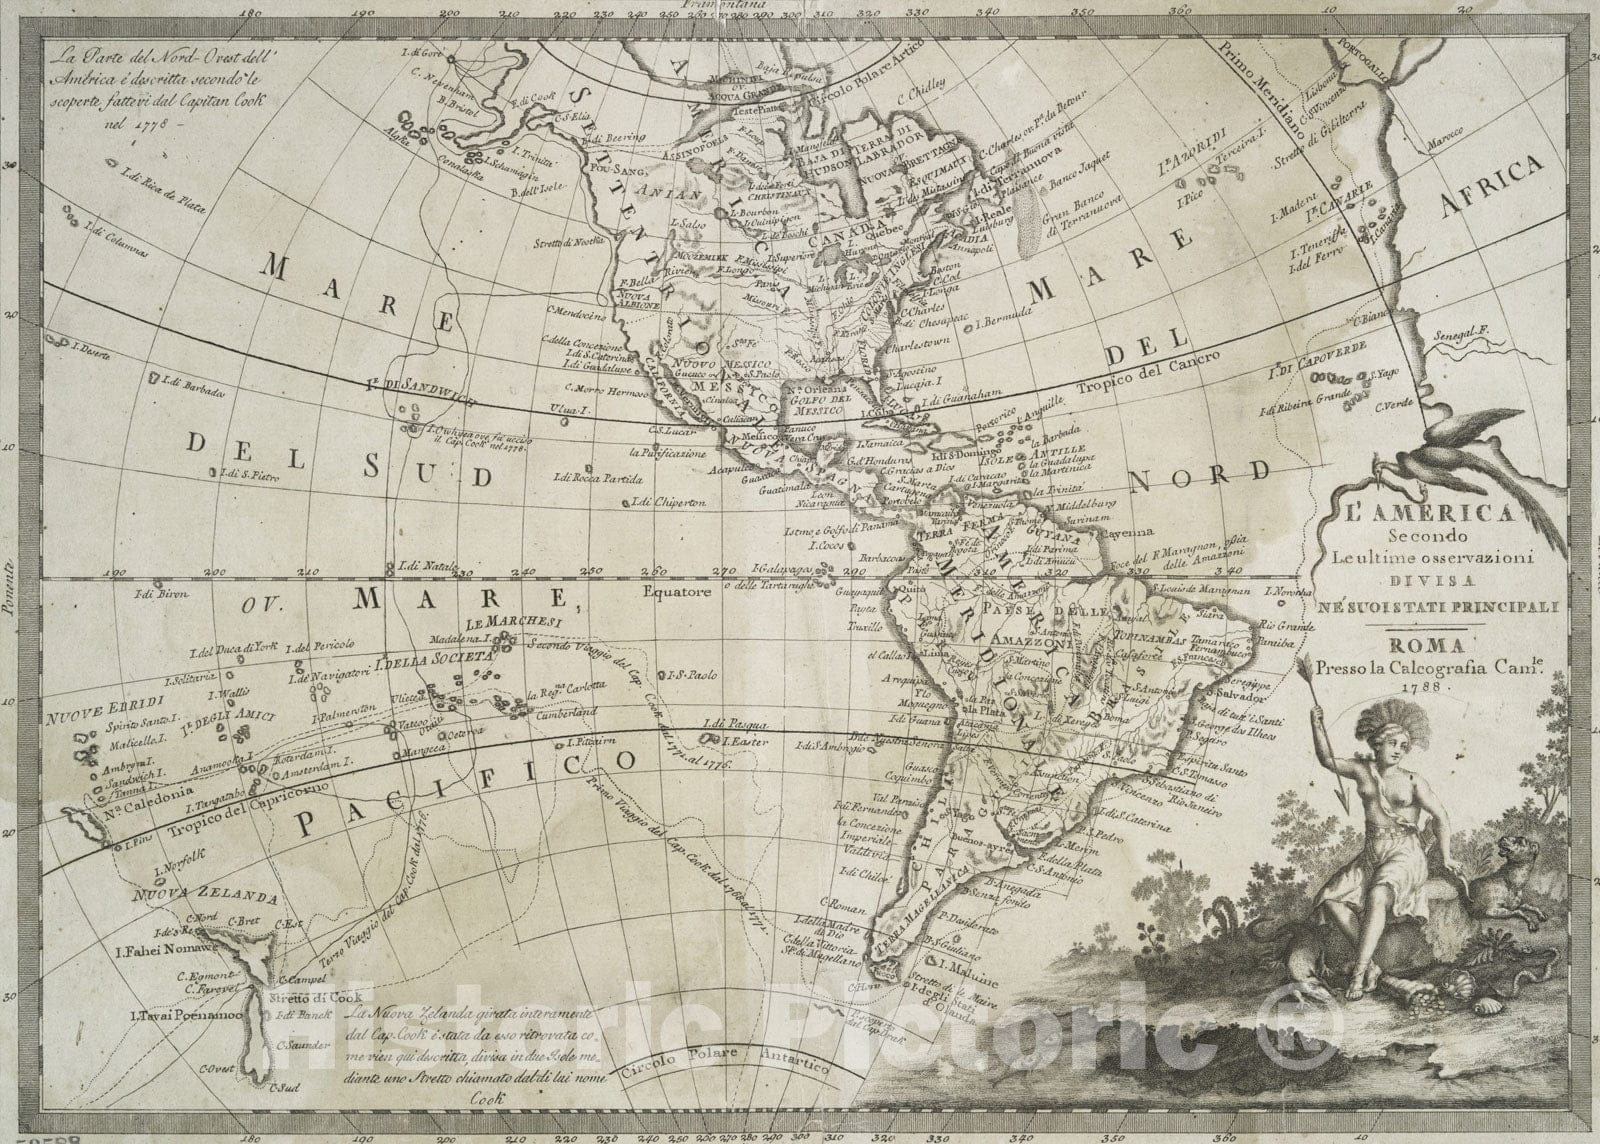 Historical Map, 1788 L'America secondo leultime osservazioni divisa ne suoistati principali, Vintage Wall Art